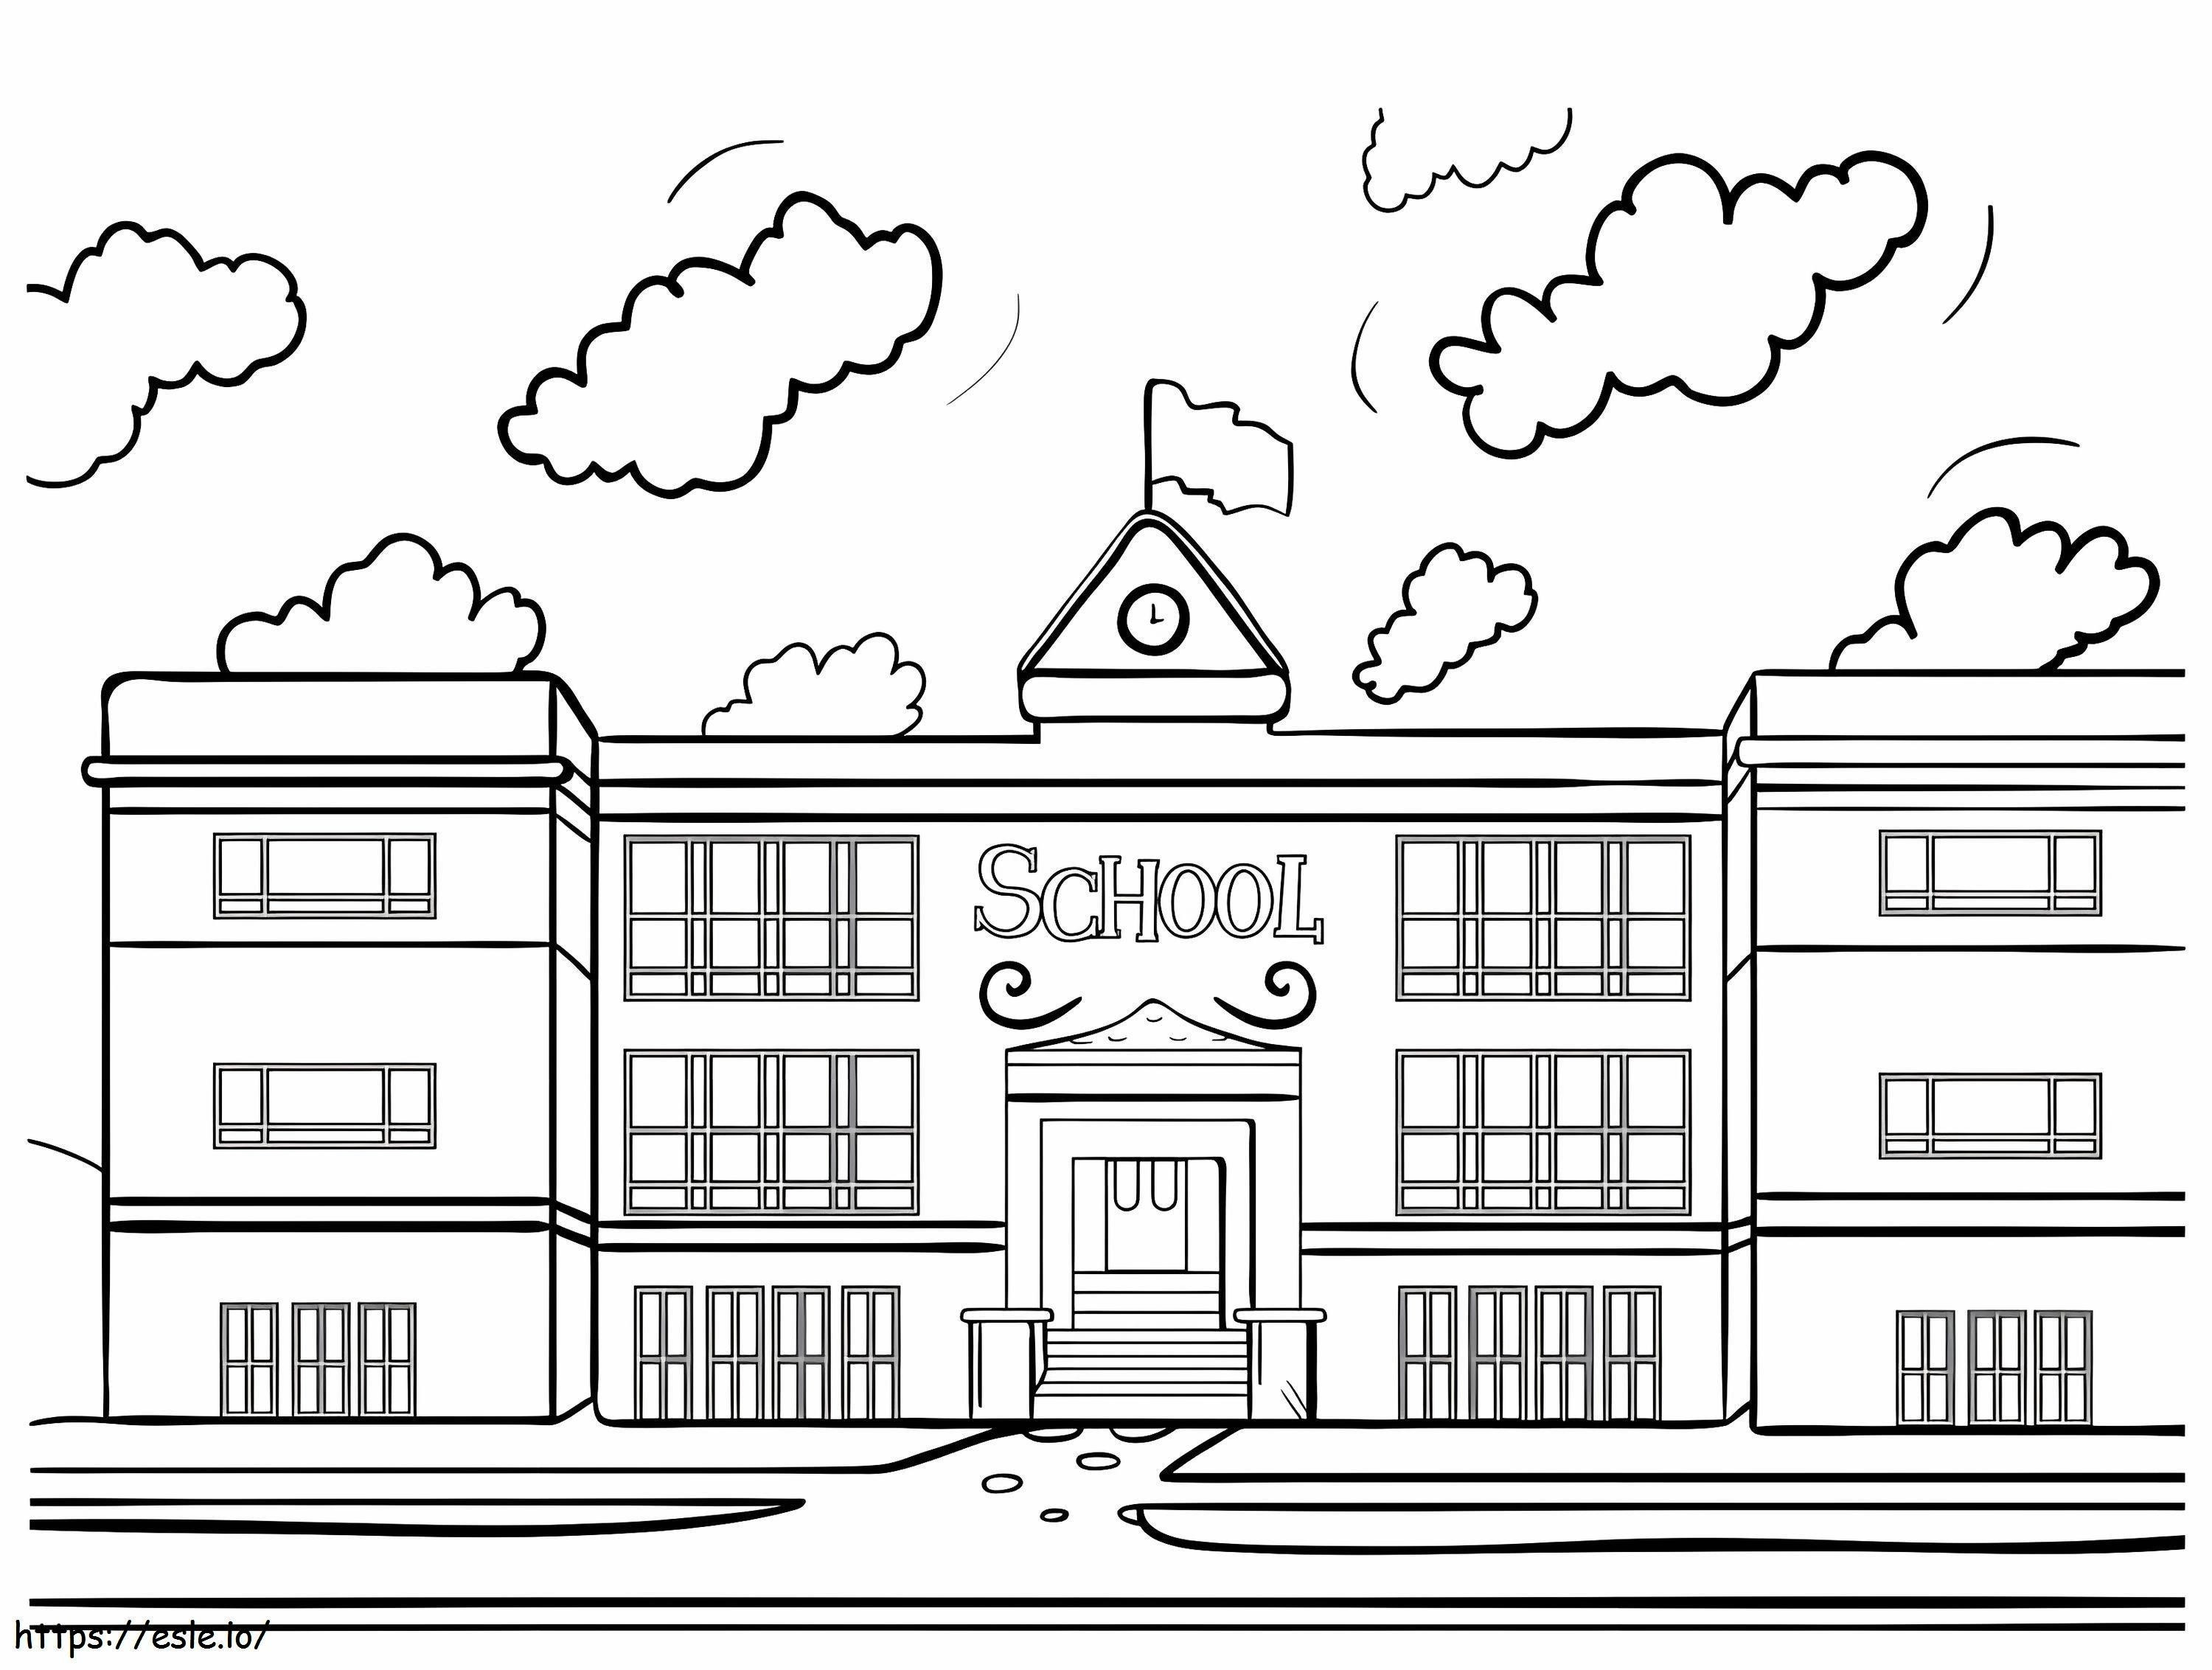 School Building coloring page